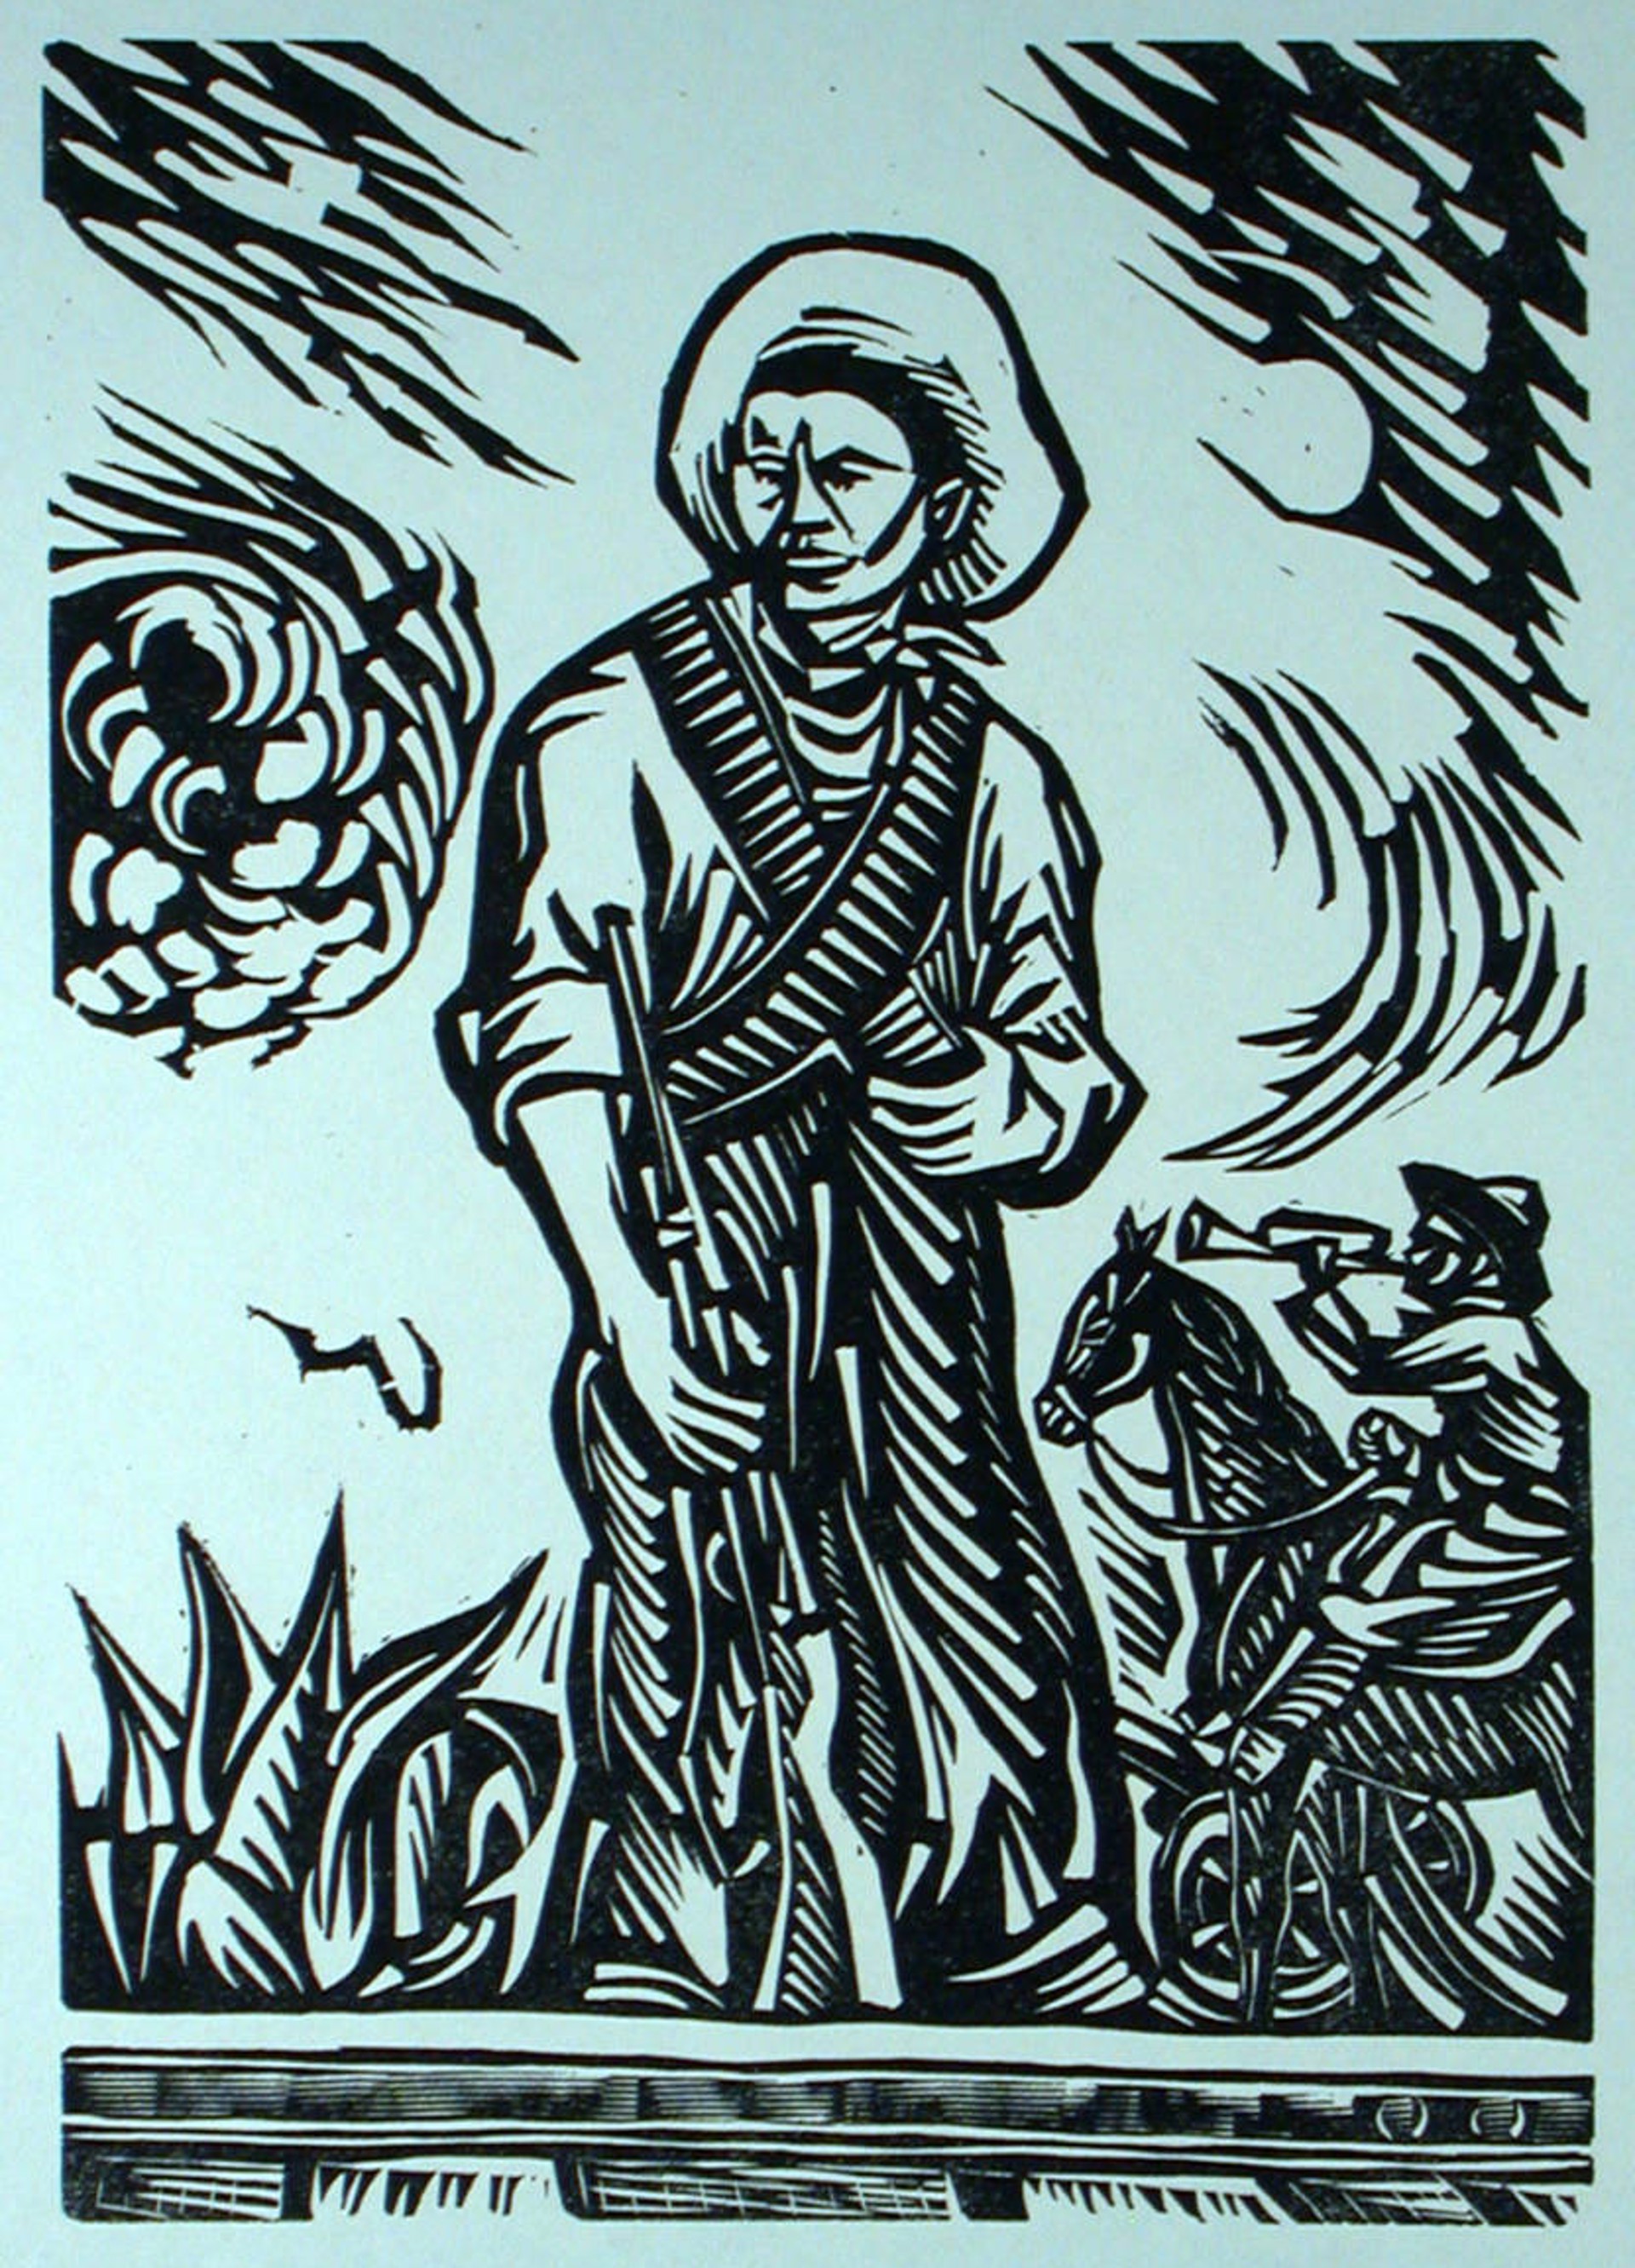 Obreros Revolucionarios by Jesús Escobedo